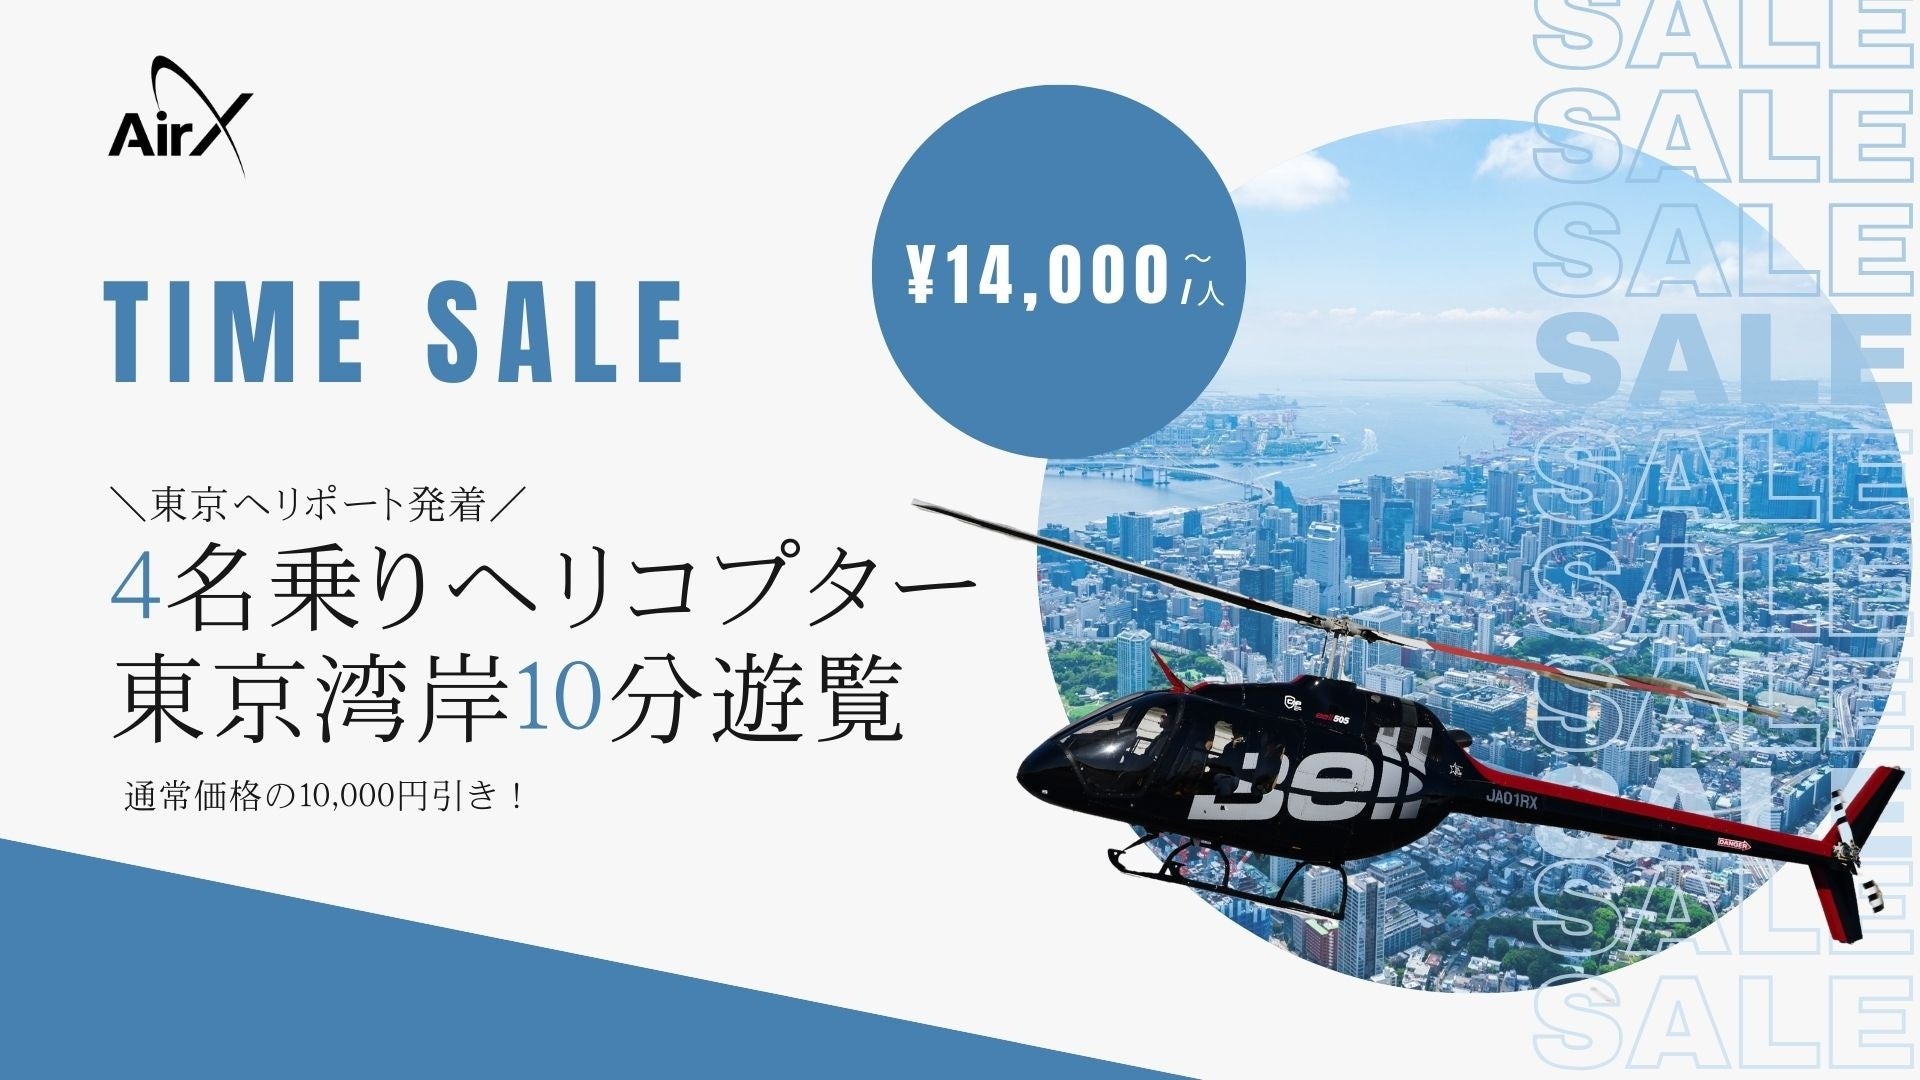 AirX、東京ヘリポート発着「4名乗りヘリコプター10分遊覧」のタイムセール開催